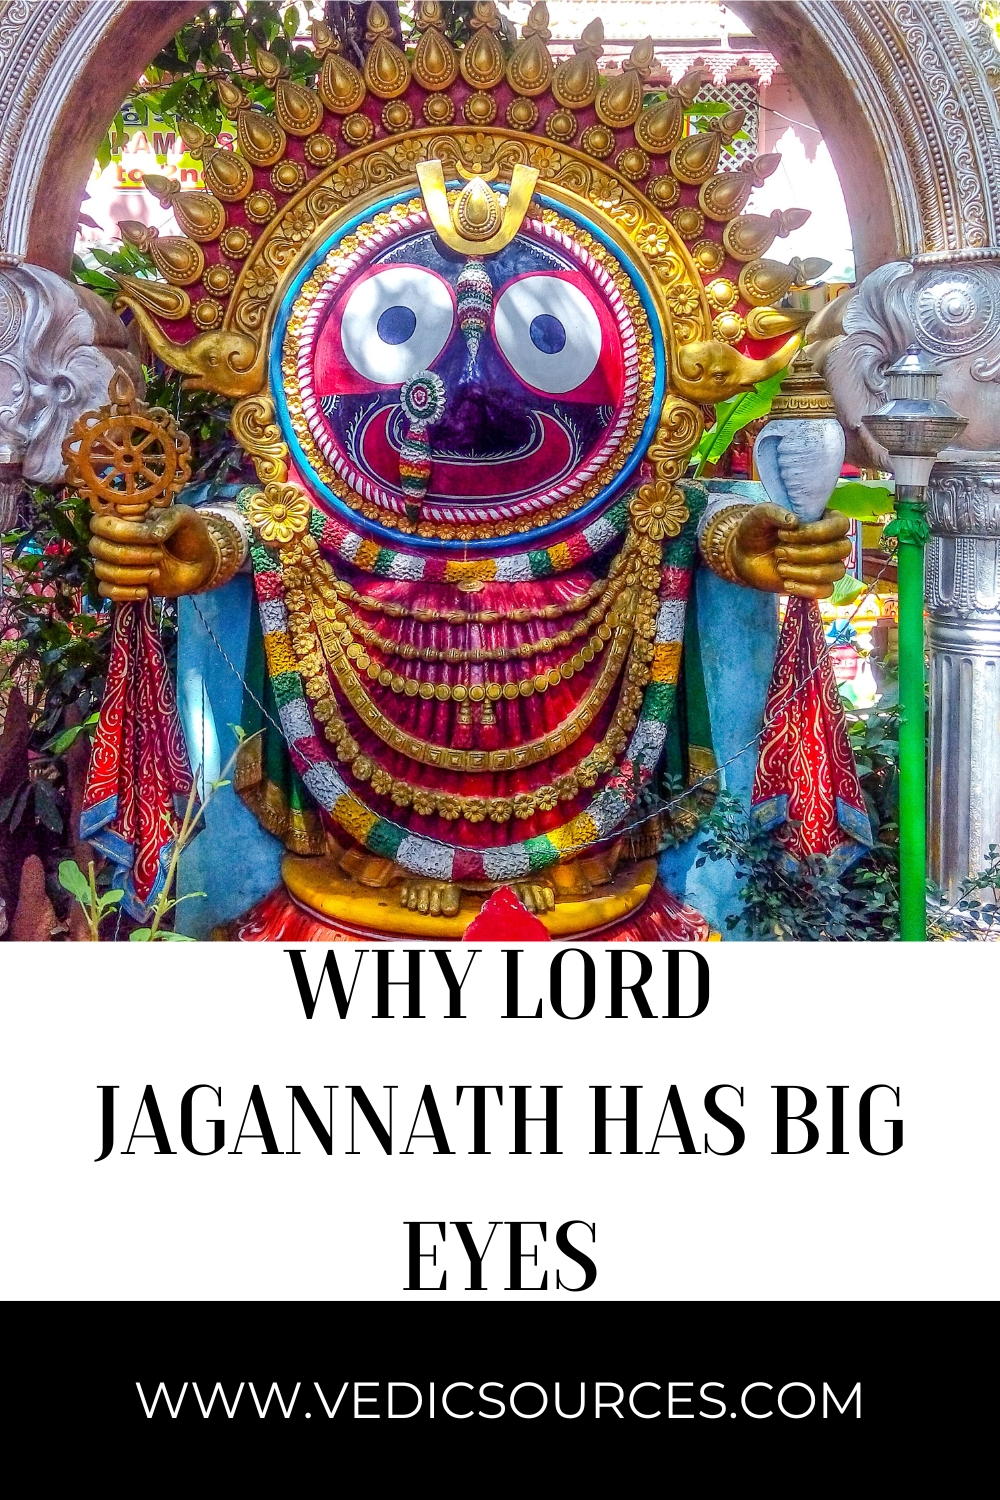 Why Lord Jagannath has Big Eyes